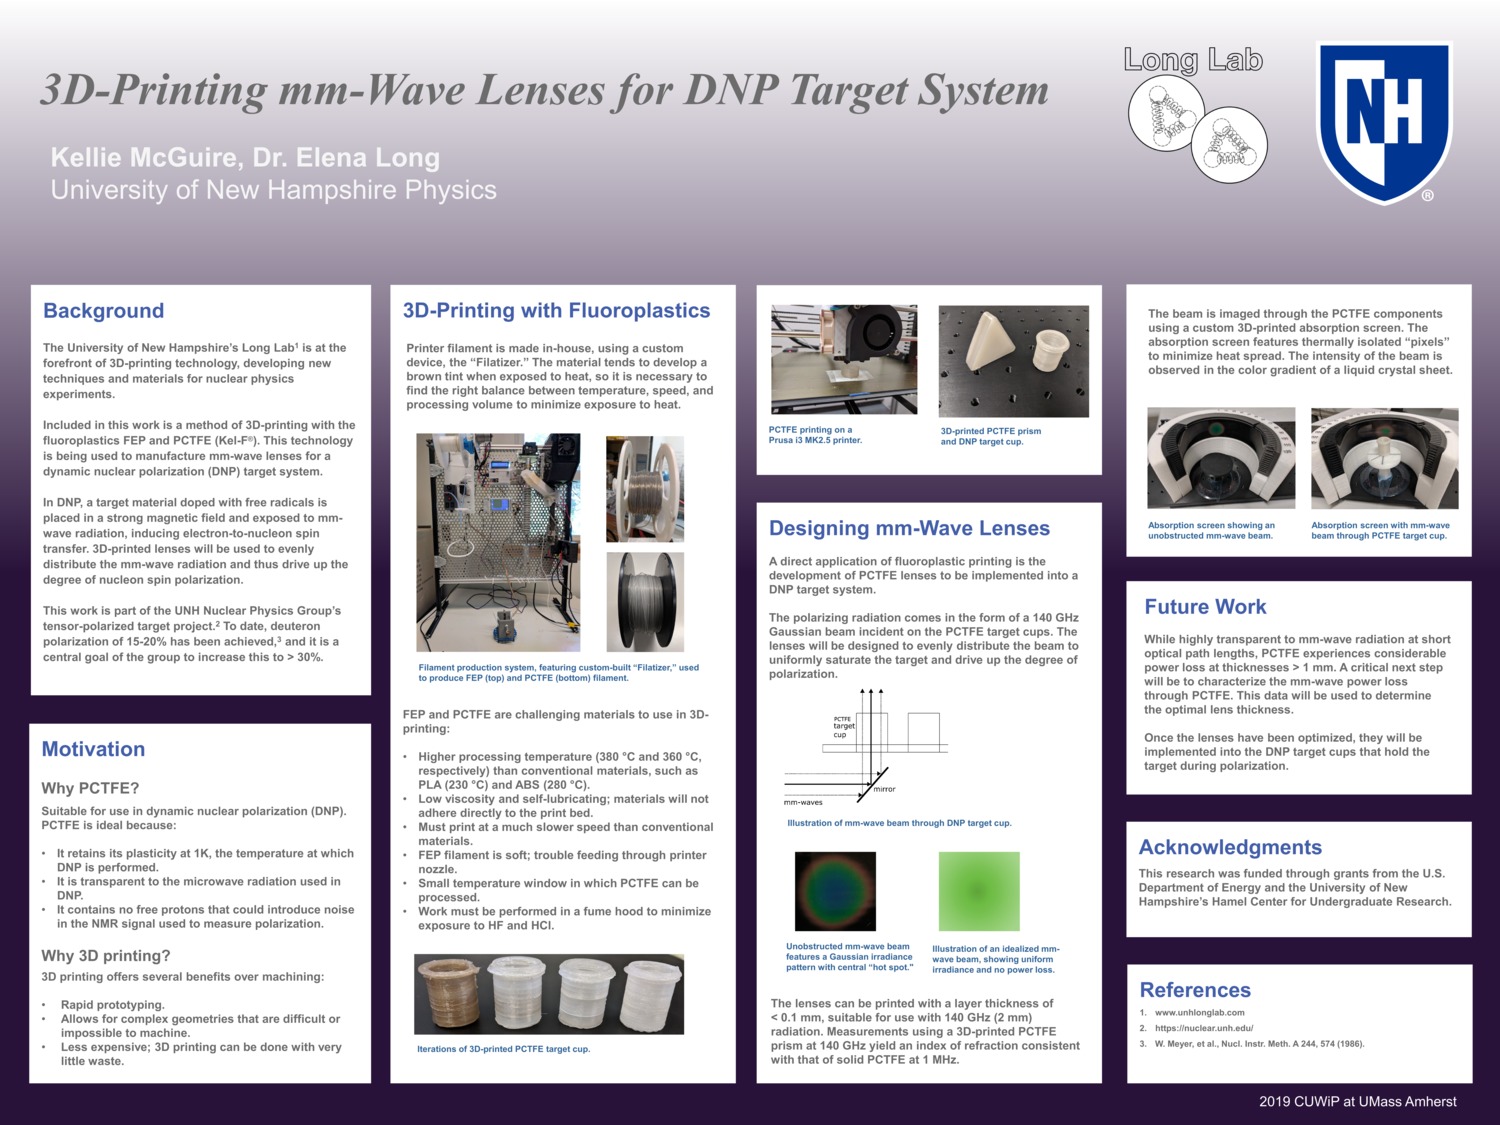 3d-Printing Mm-Wave Lenses For Dnp Target System by kjm1042